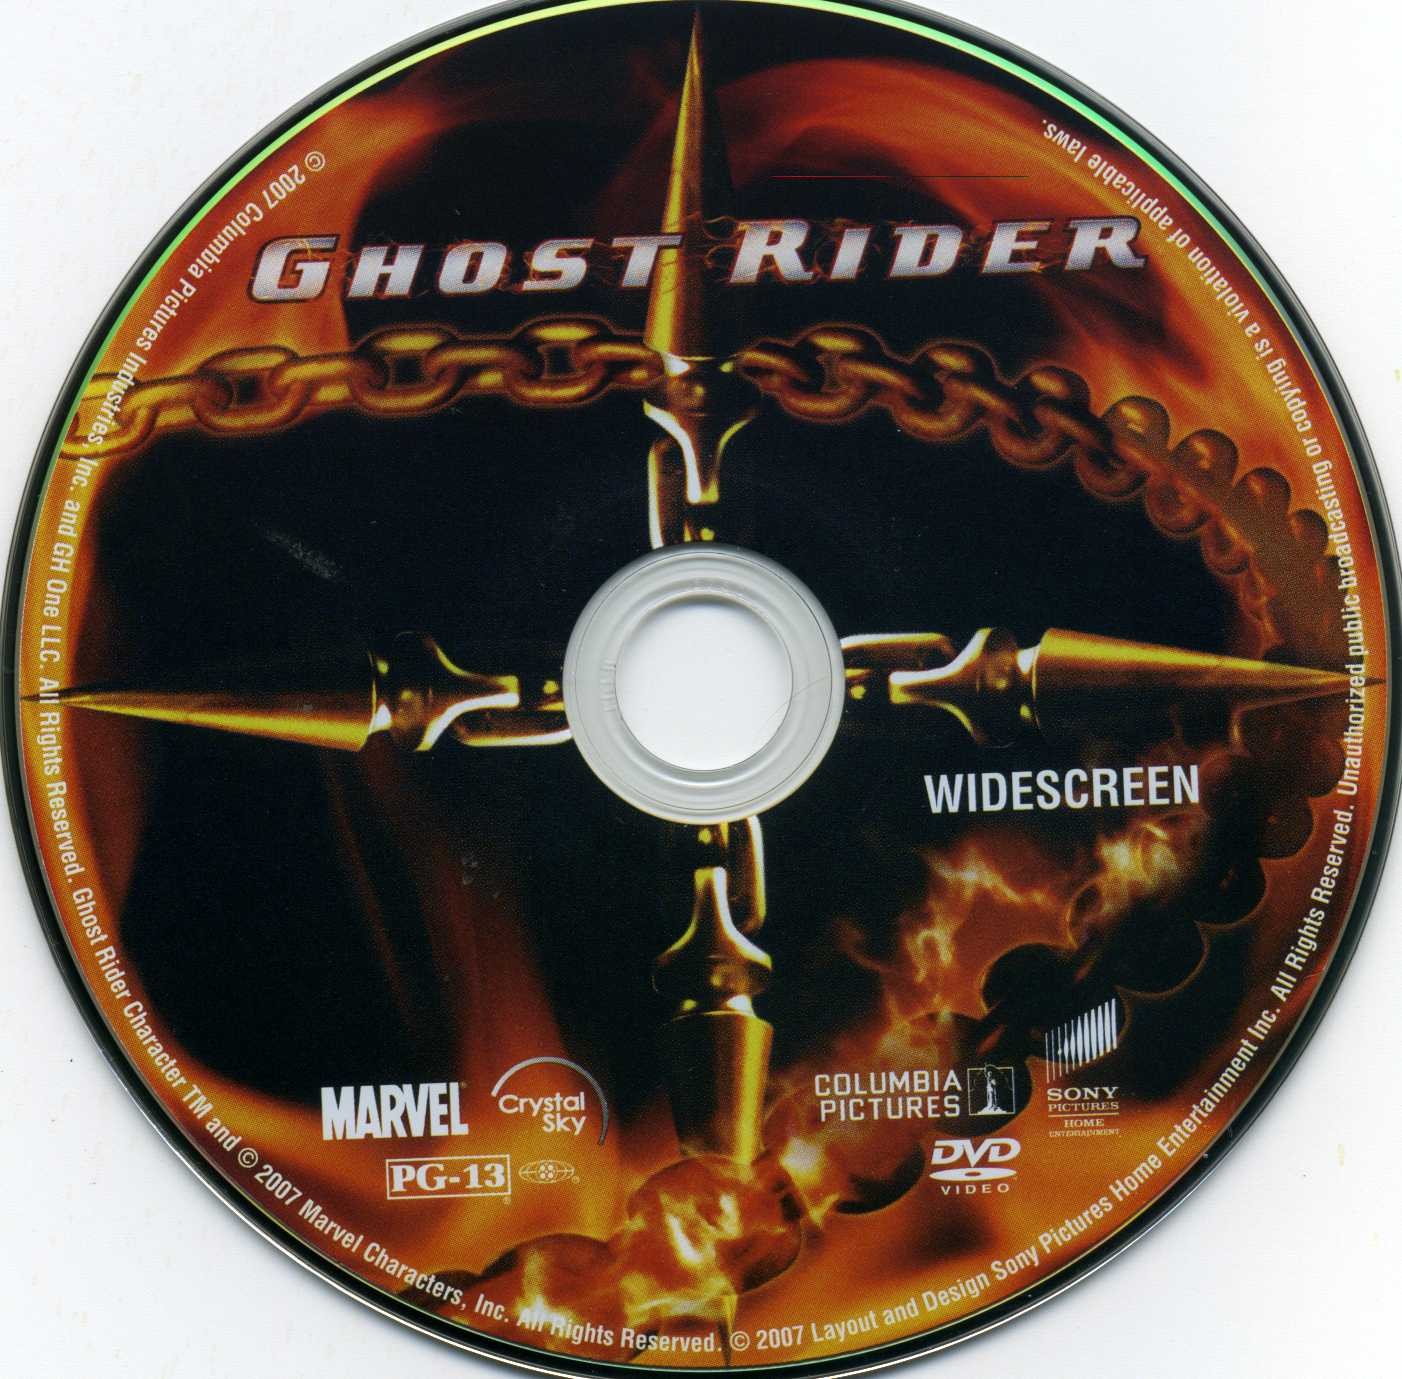 Ghost rider v3